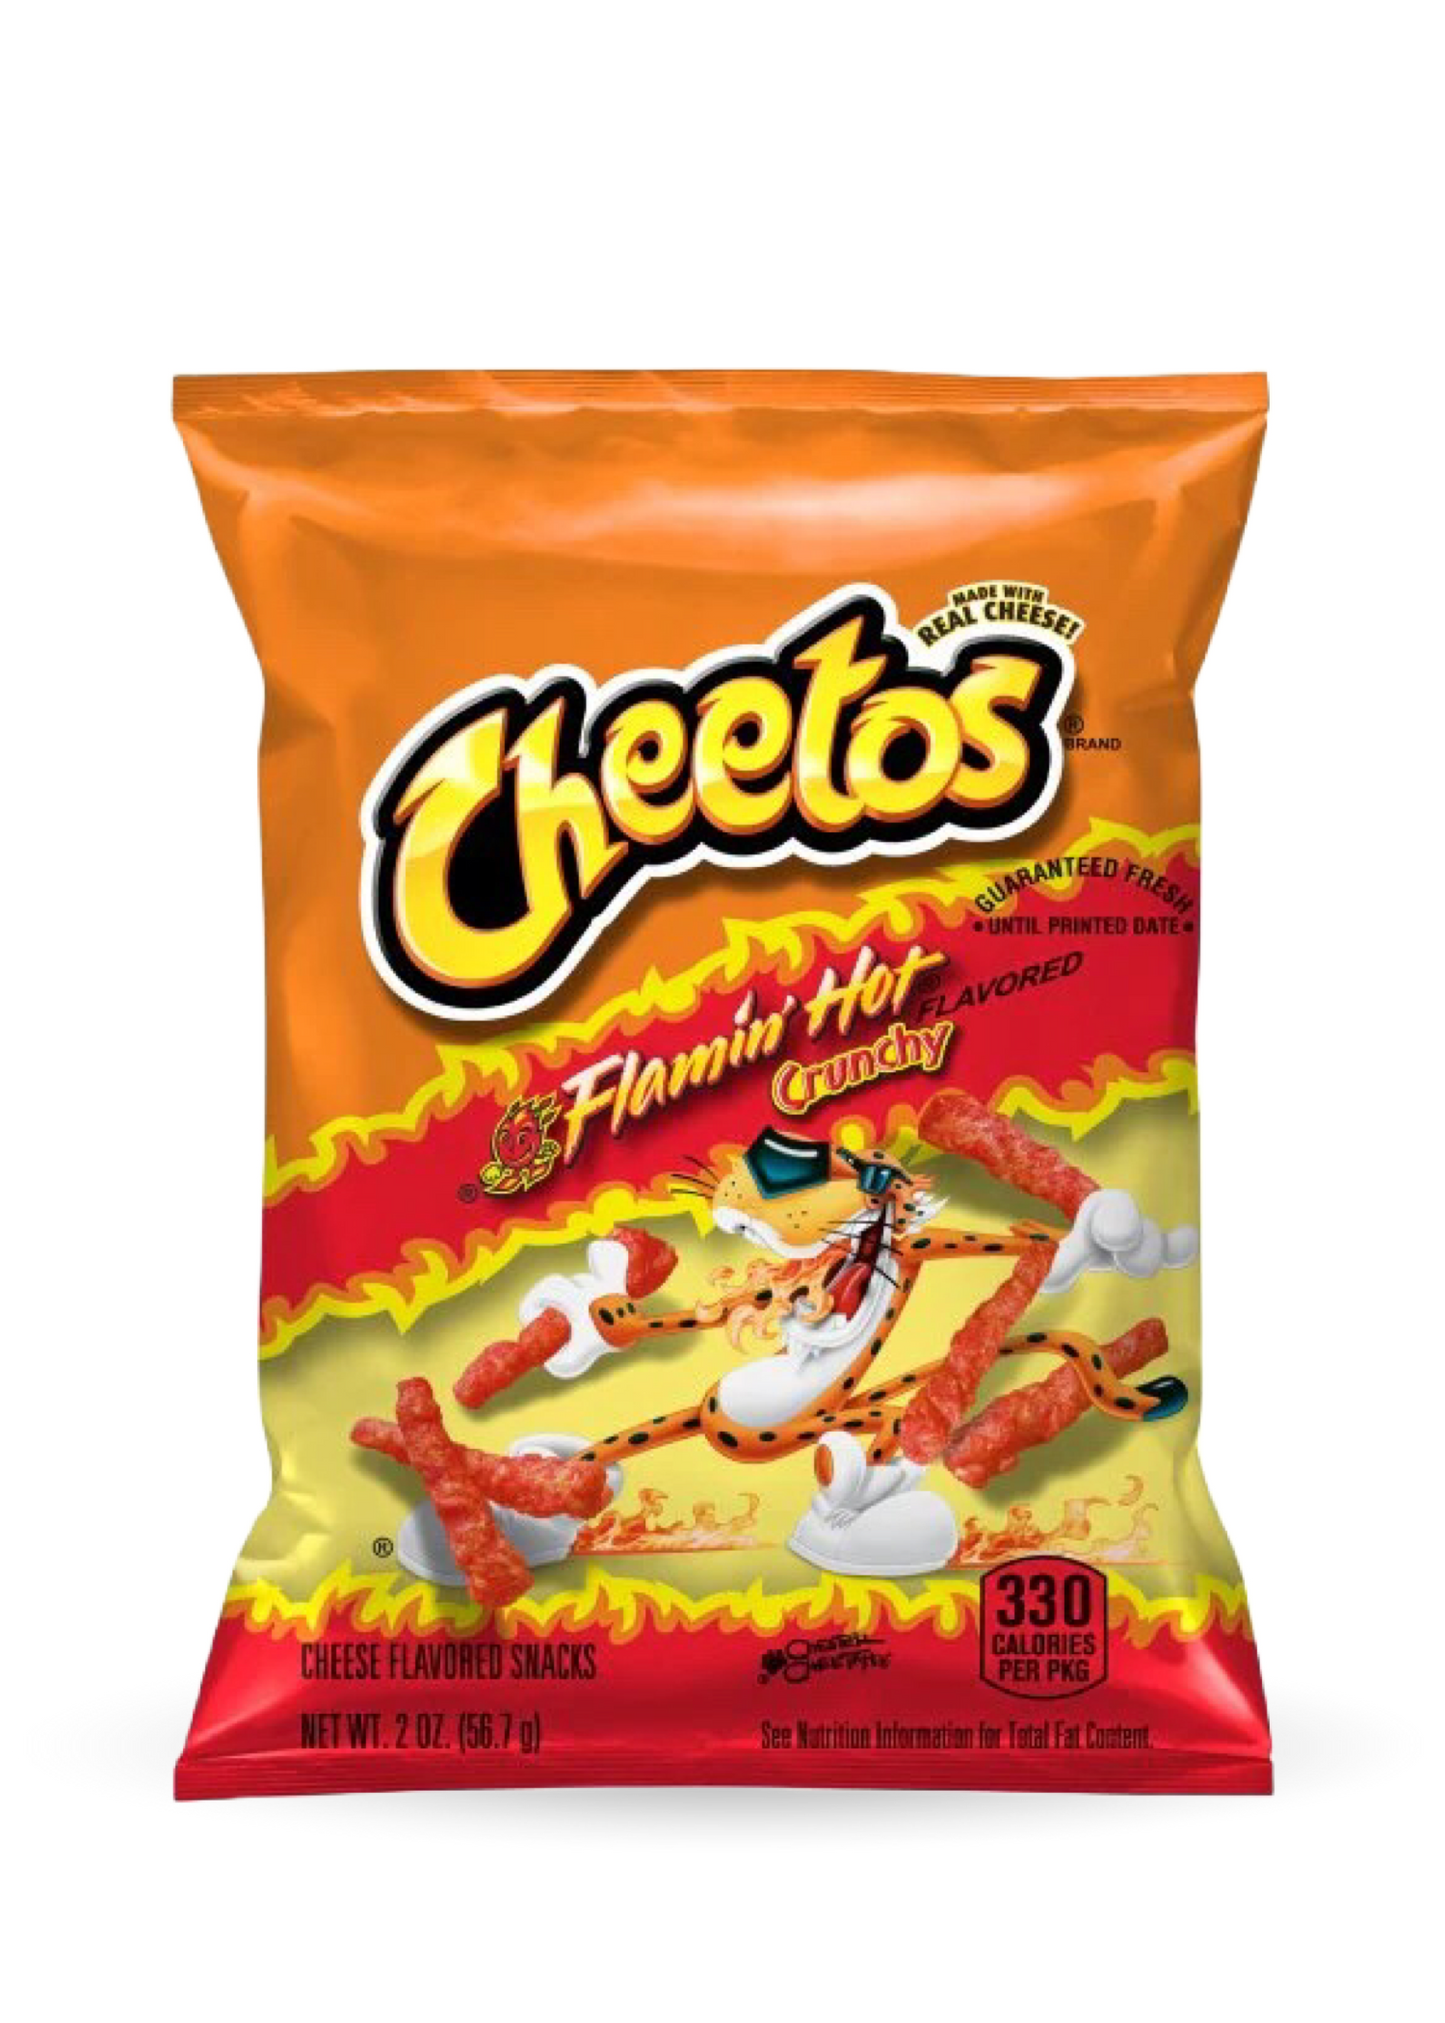 Cheetos | Frito Lay Flamin’ Hot Crunchy